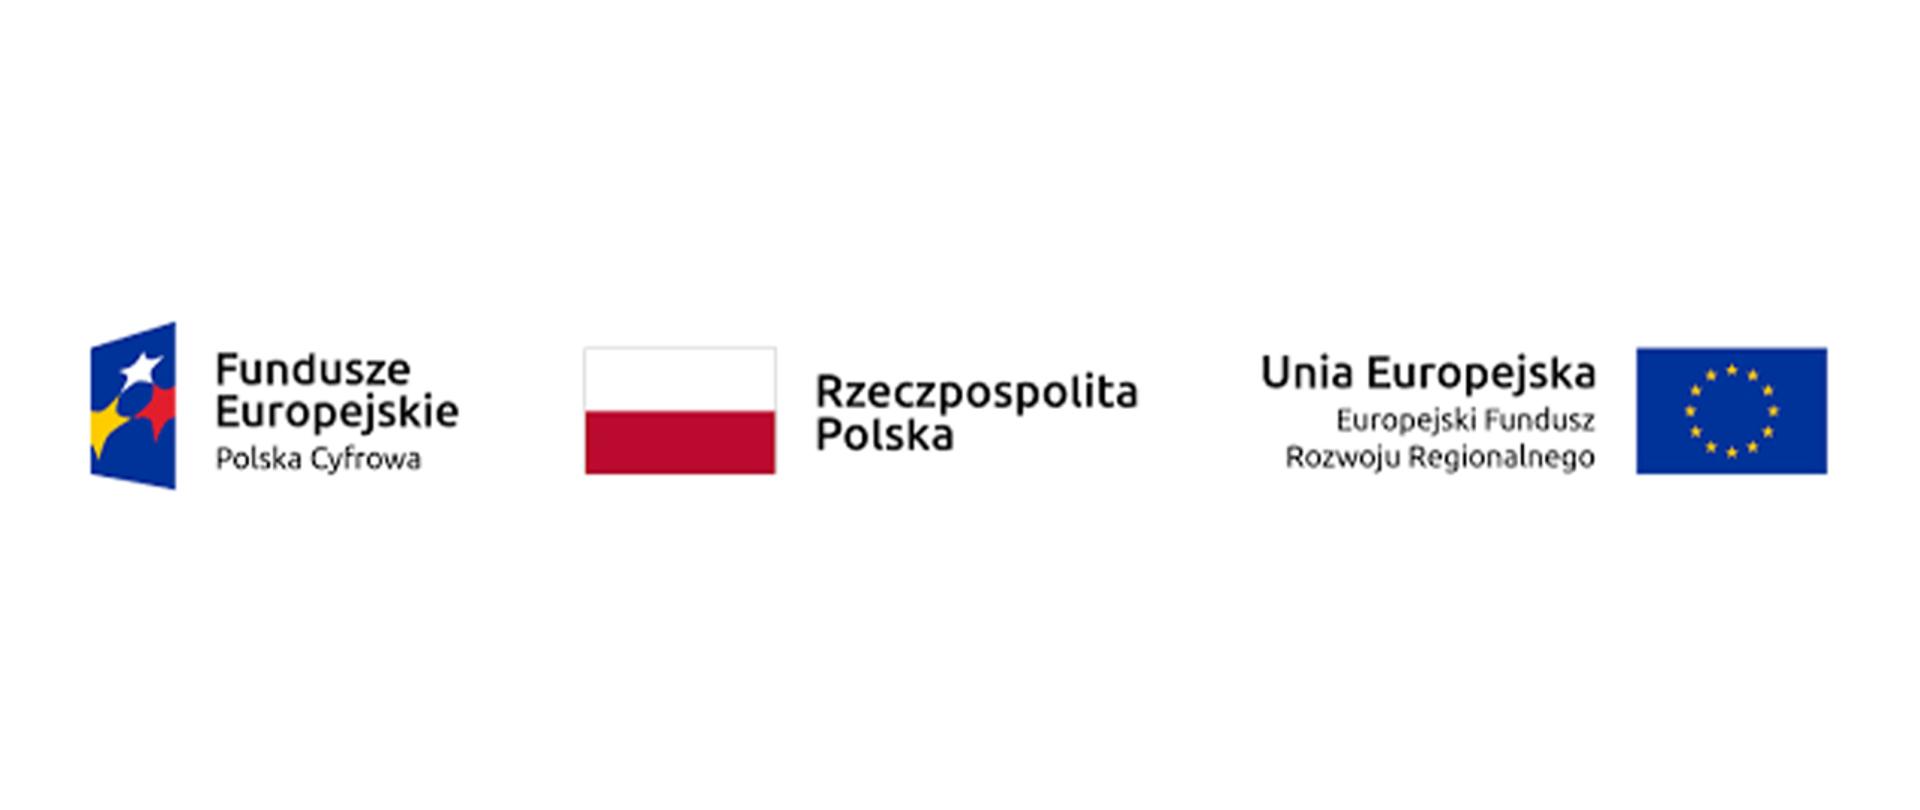 Logotyp partnera projektu: Fundusze Europejskie Polska Cyfrowa, Flaga RP, Flaga UE